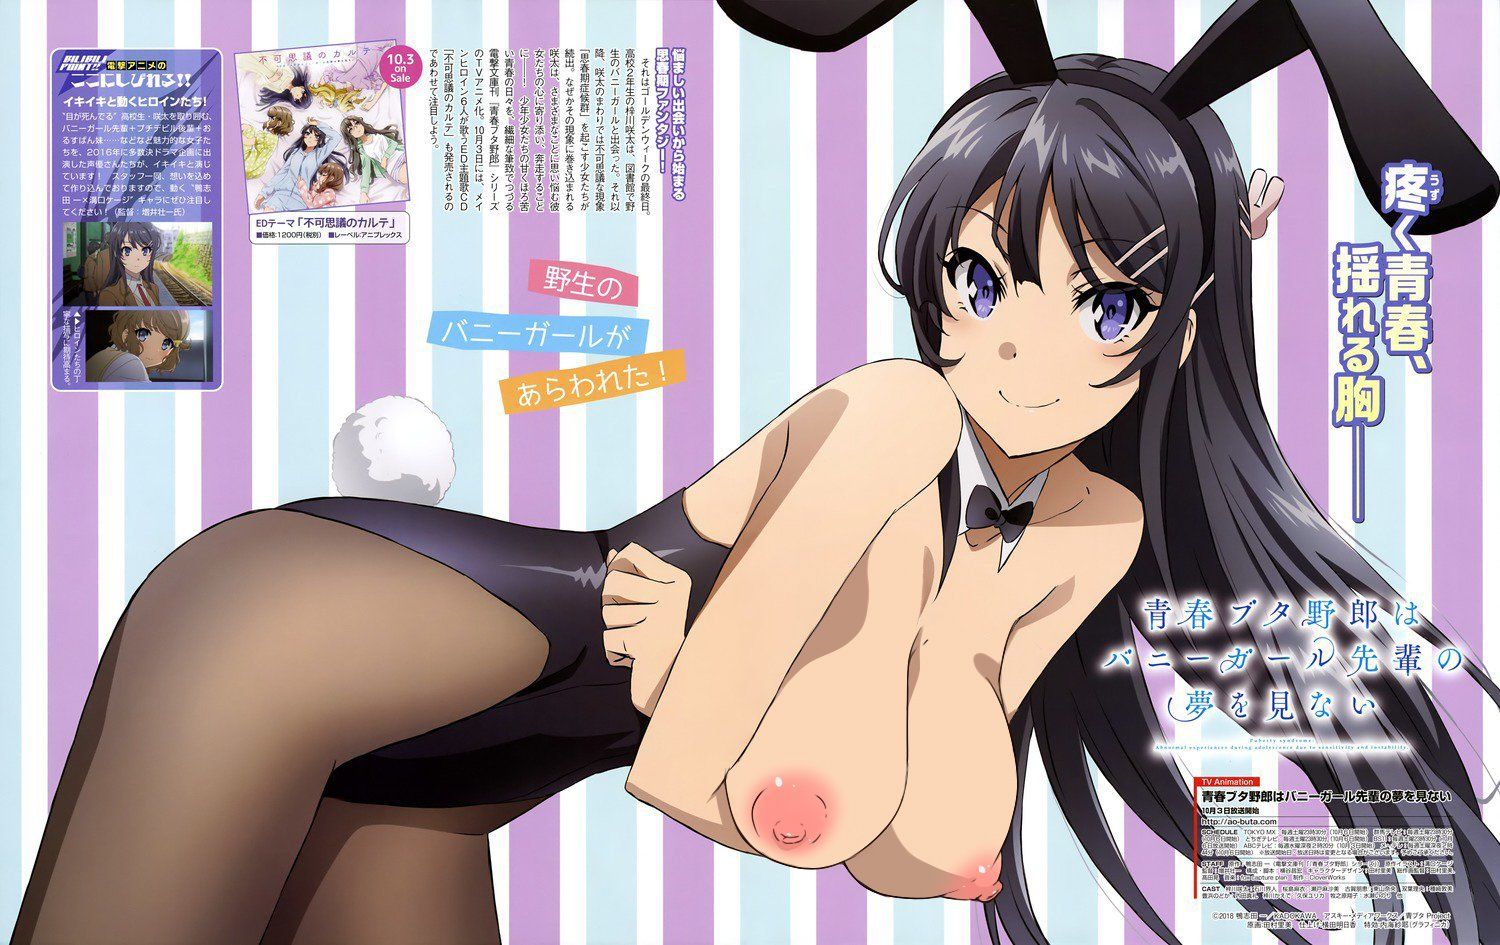 [Youth pig bastard] bunny girl senior, erotic image of Mai Sakurajima! Part 2 4